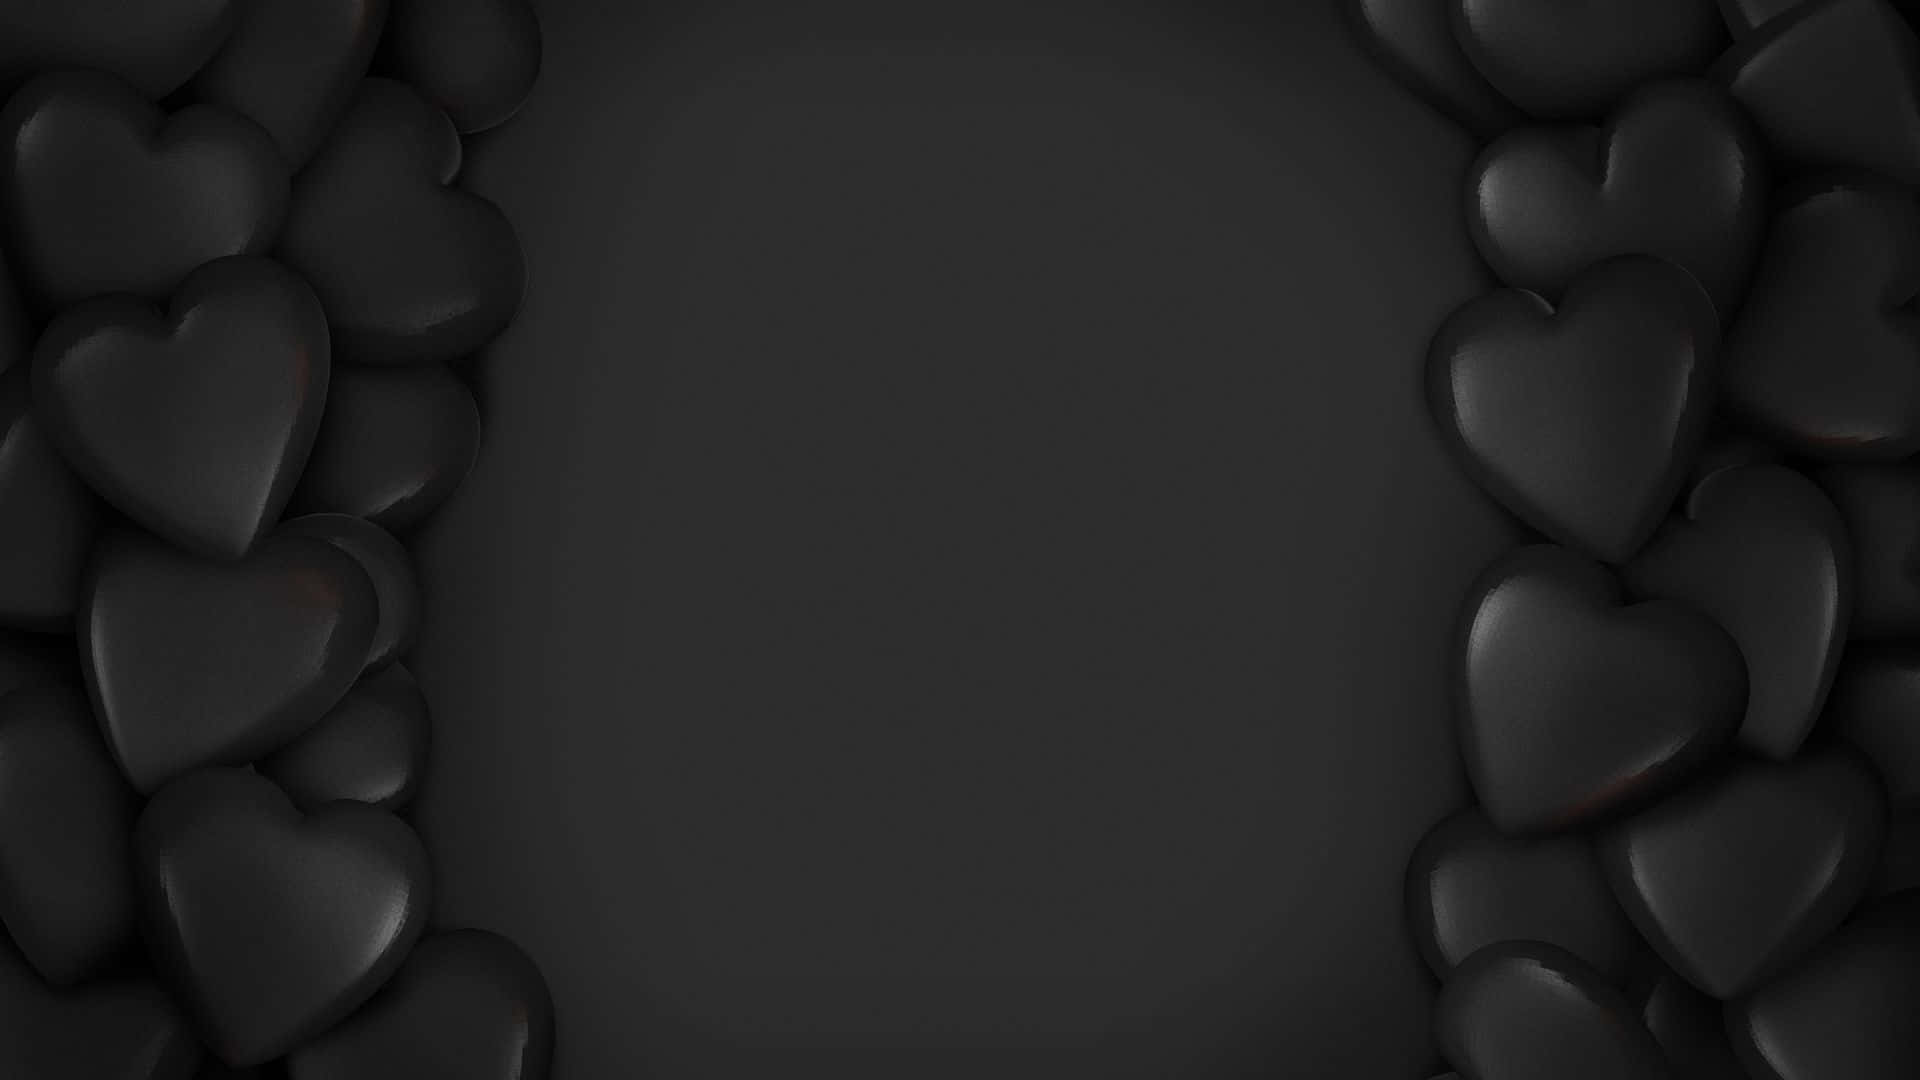 Black Hearts Design Black Background